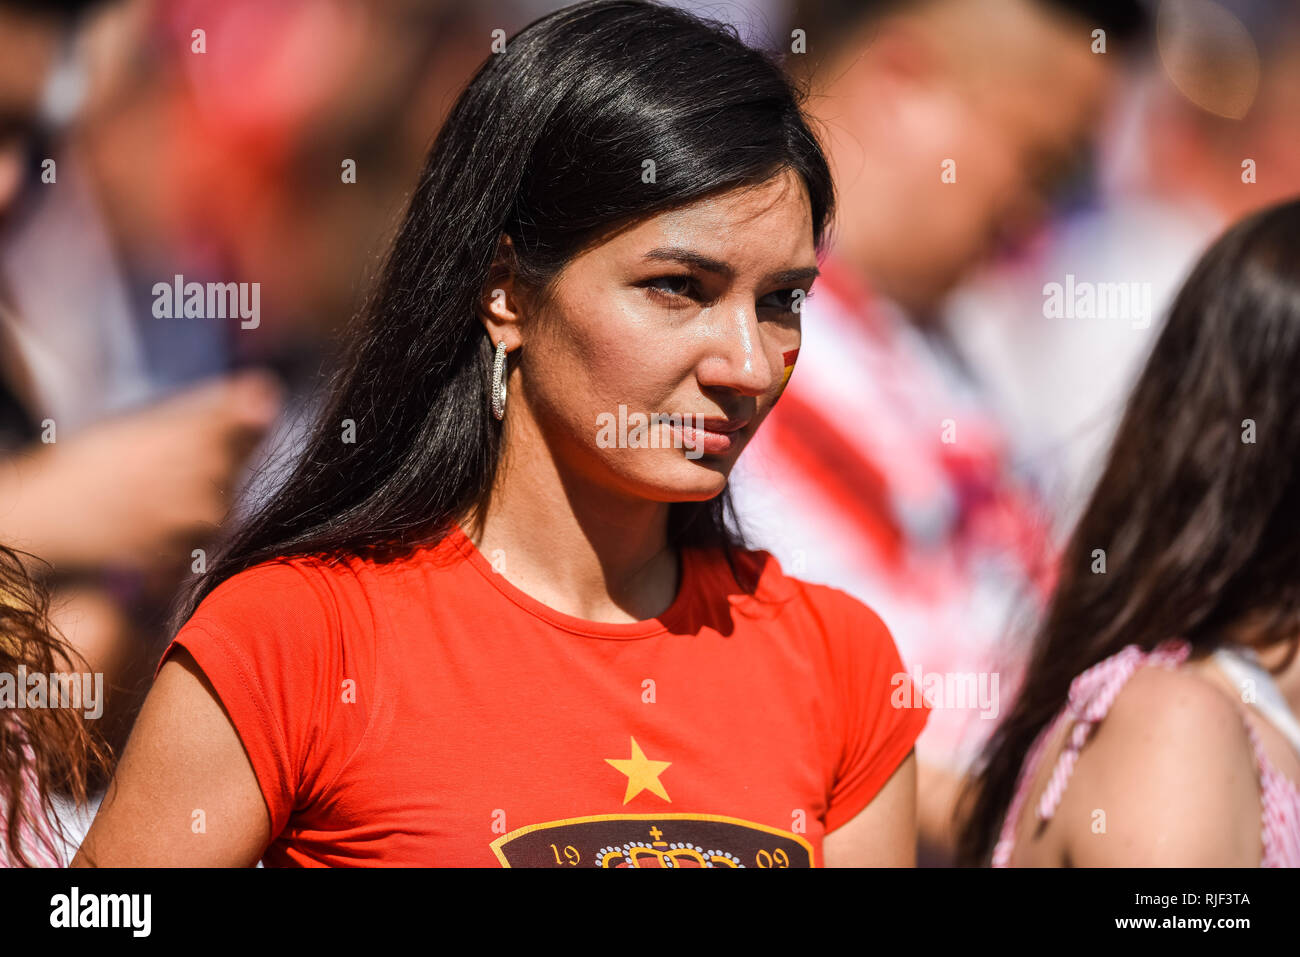 Moskau, Russland - Juli 1, 2018. Spanisch Fan Mädchen vor der FIFA Fußball-Weltmeisterschaft 2018 Runde 16 Spanien vs Russland. Stockfoto